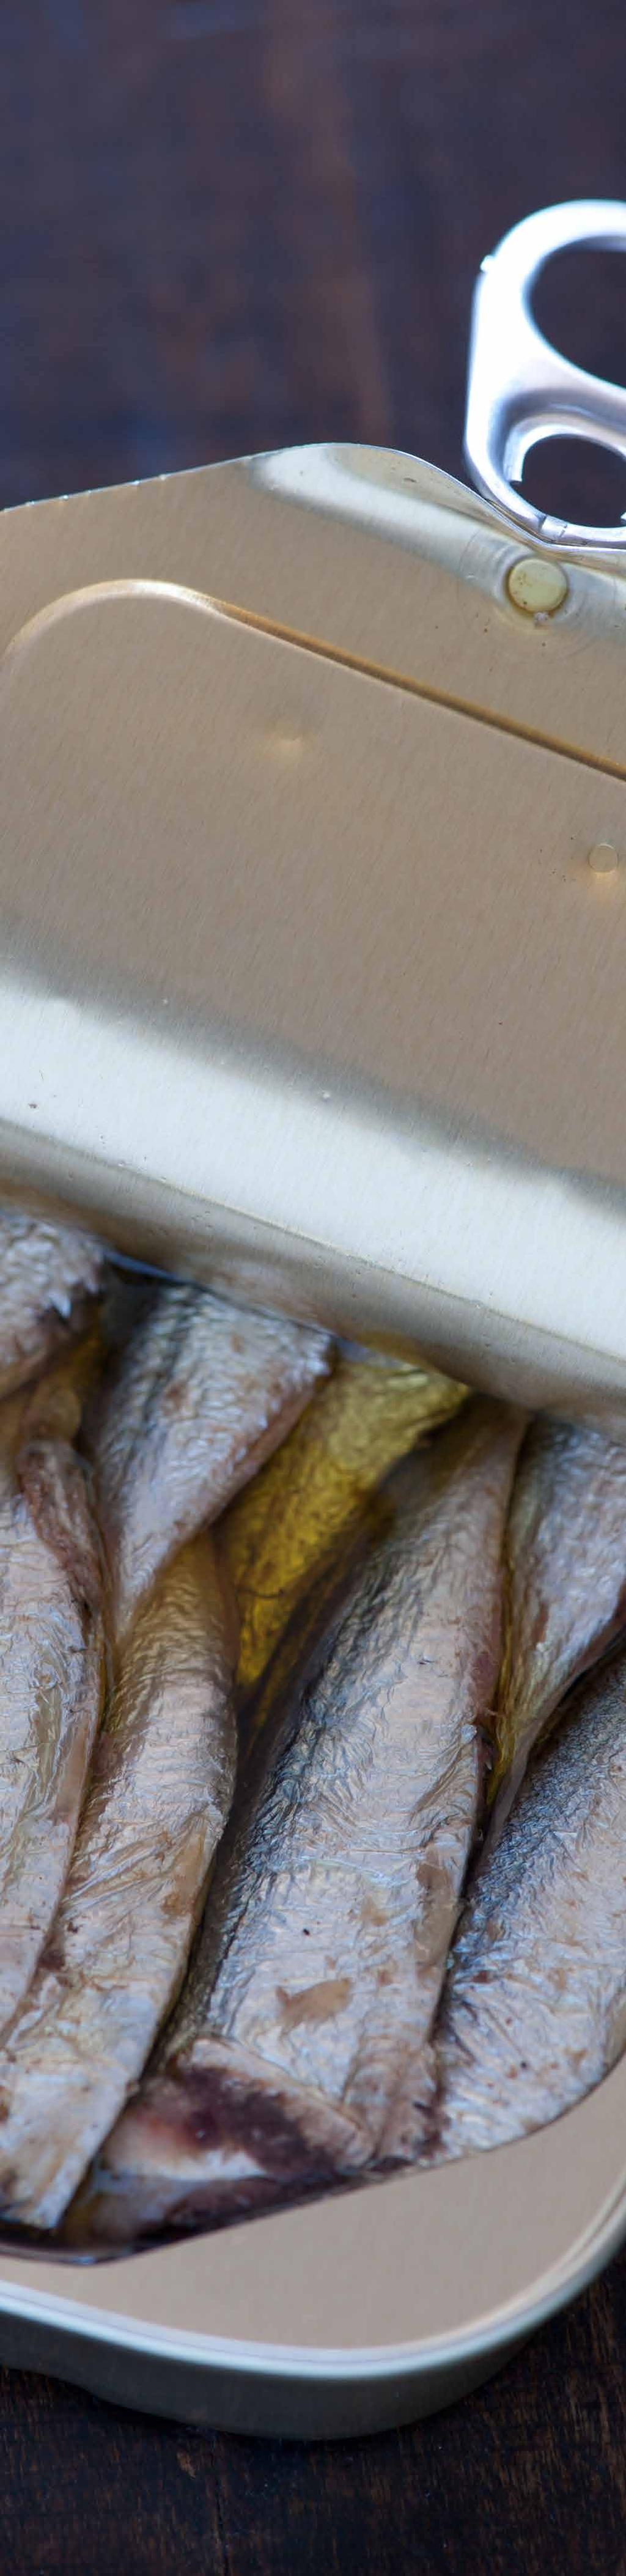 EVOLUCIÓN DE LAS EXPORTACIONES Exportaciones por producto Las exportaciones del Ecuador de sardina principalmente se las realiza en conserva, entre el 2011 y 2014 presentaron una tasa de crecimiento